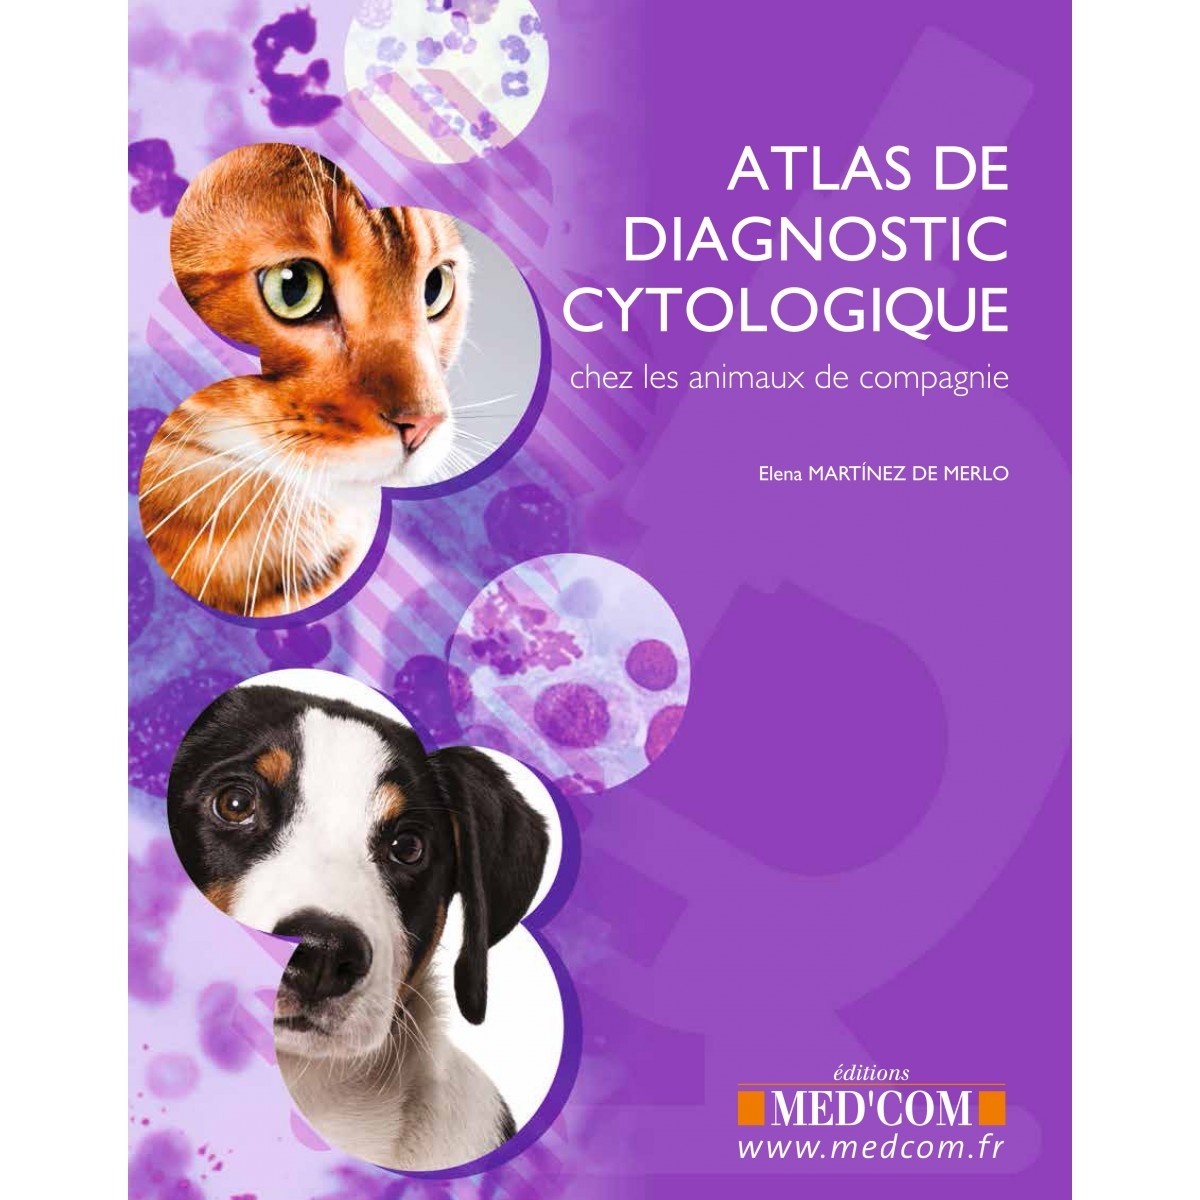 Atlas de diagnostic cytologique chez les animaux de compagnie